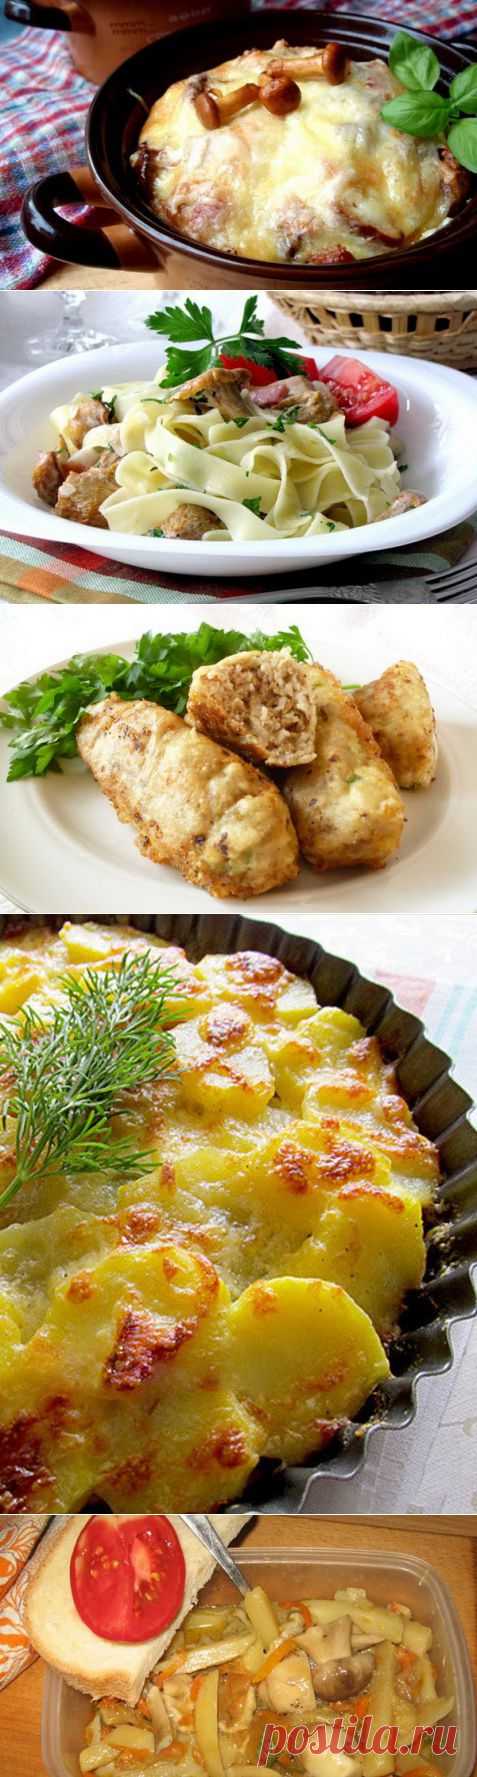 5 лучших рецептов горячих блюд с грибами | Дом на Клео | Kleo.ru